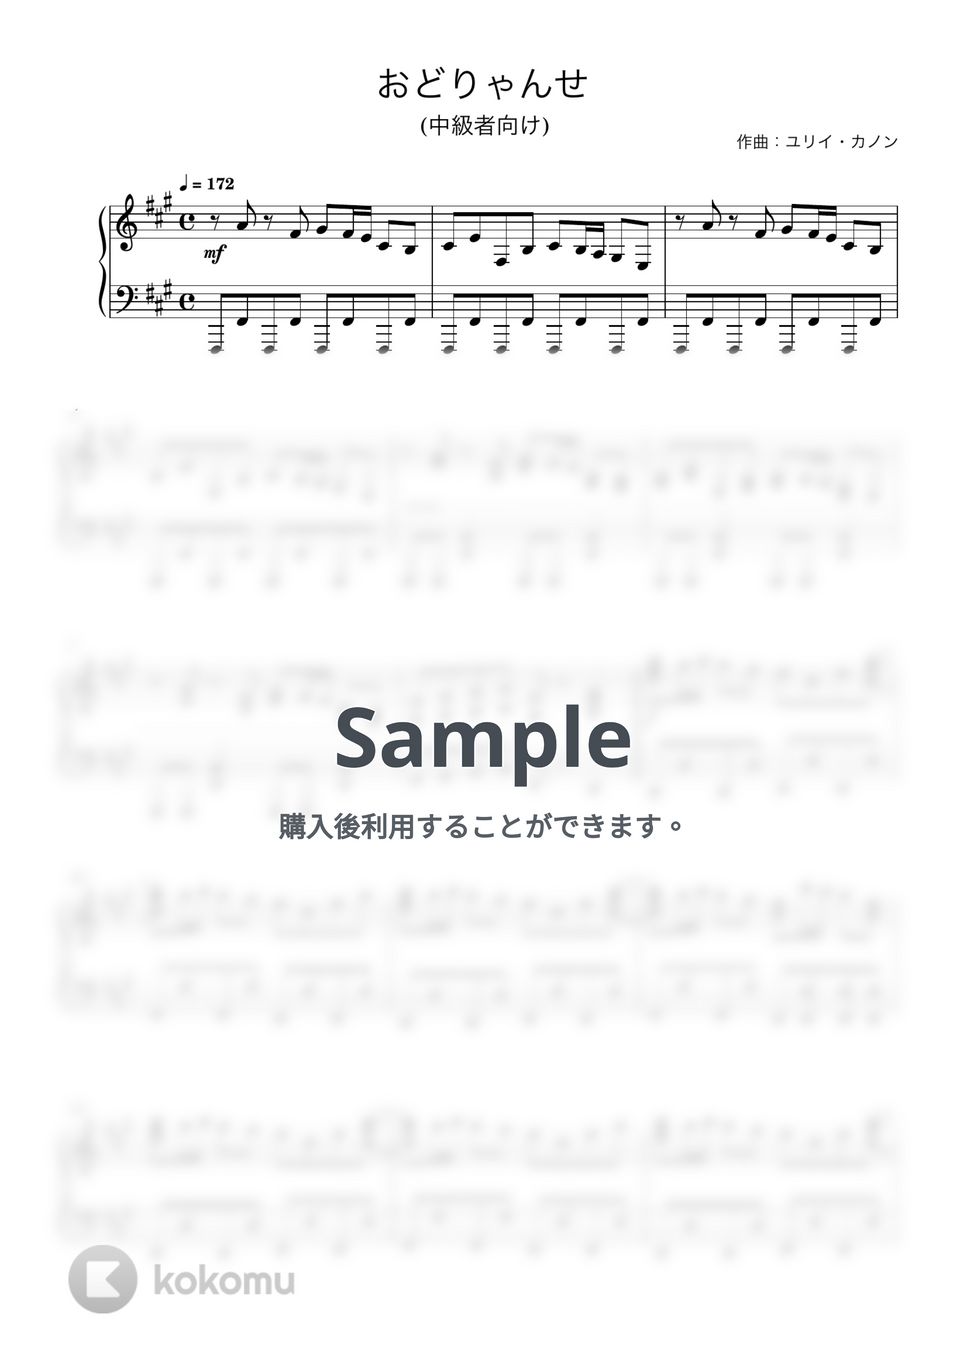 ユリイ・カノン - おどりゃんせ (ピアノ中級者向け) by Piano Lovers. jp